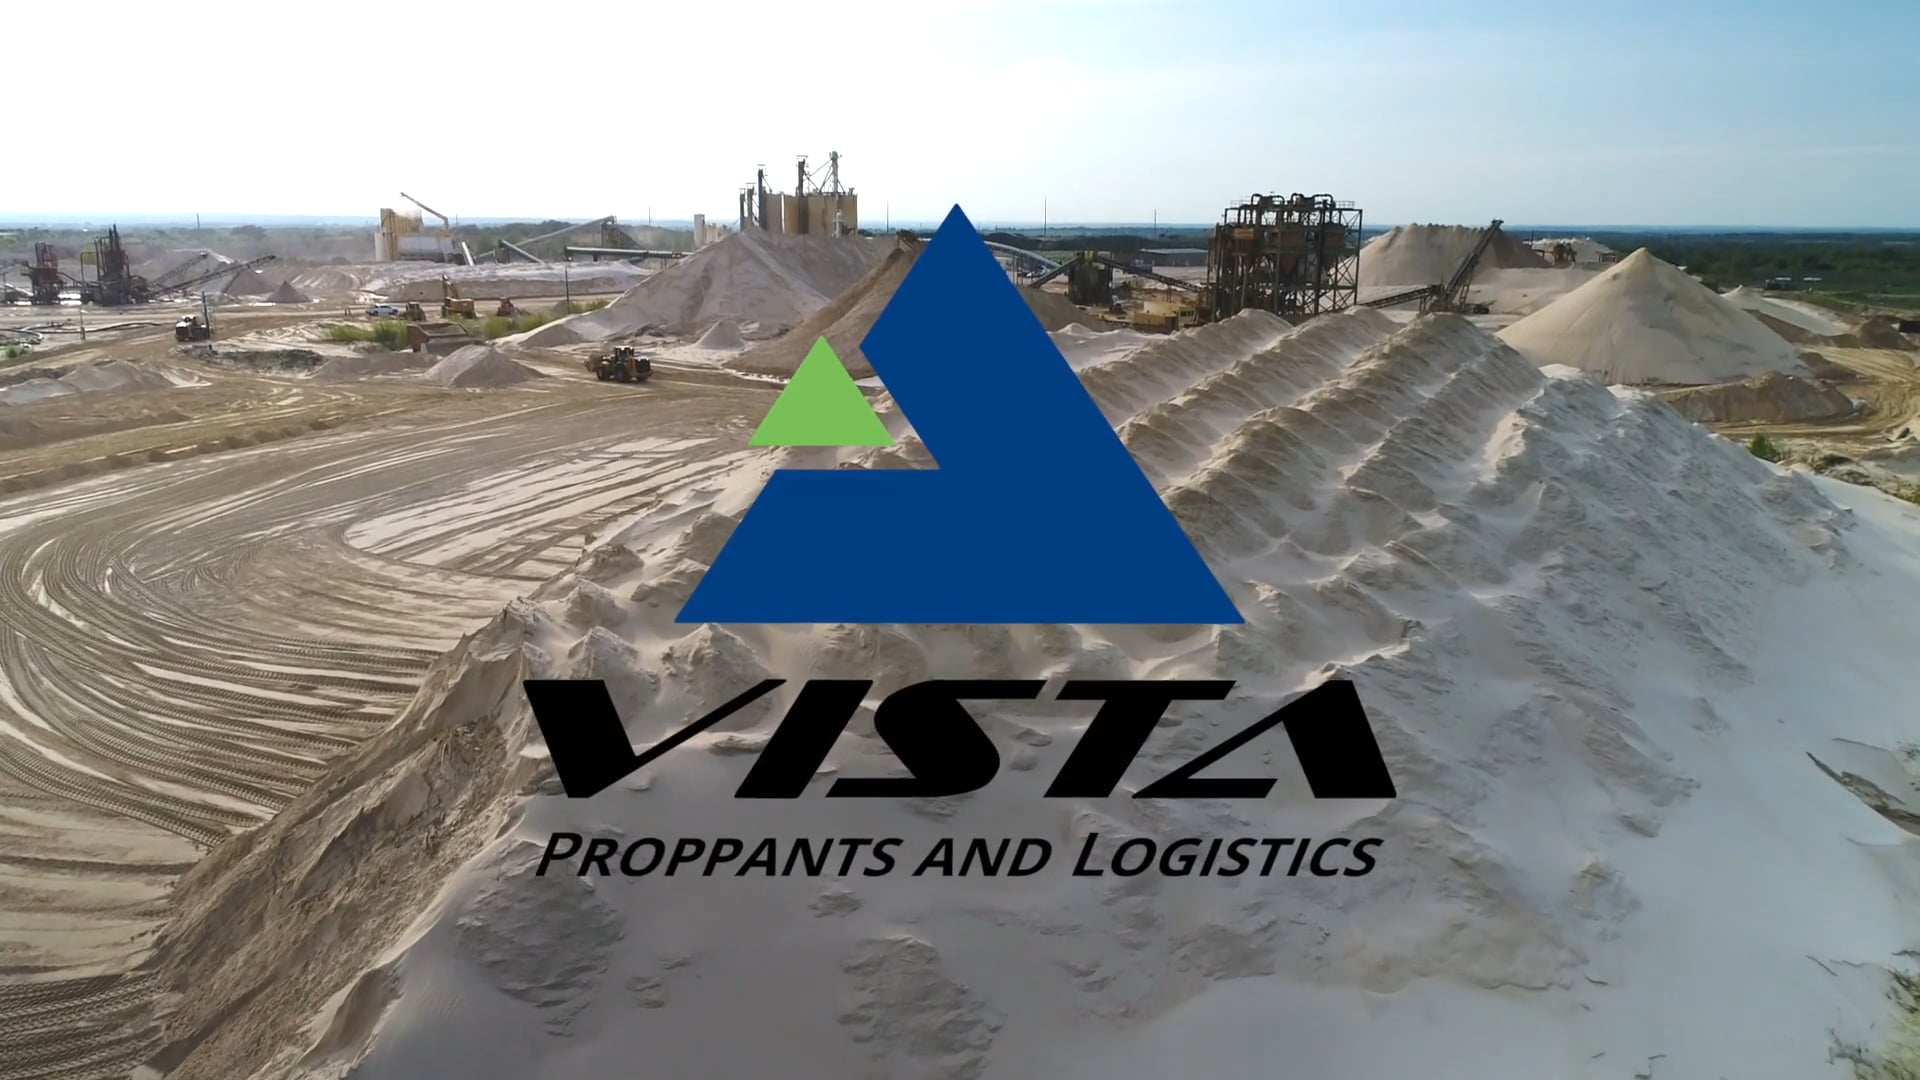 VIsta Proppants and Logistics